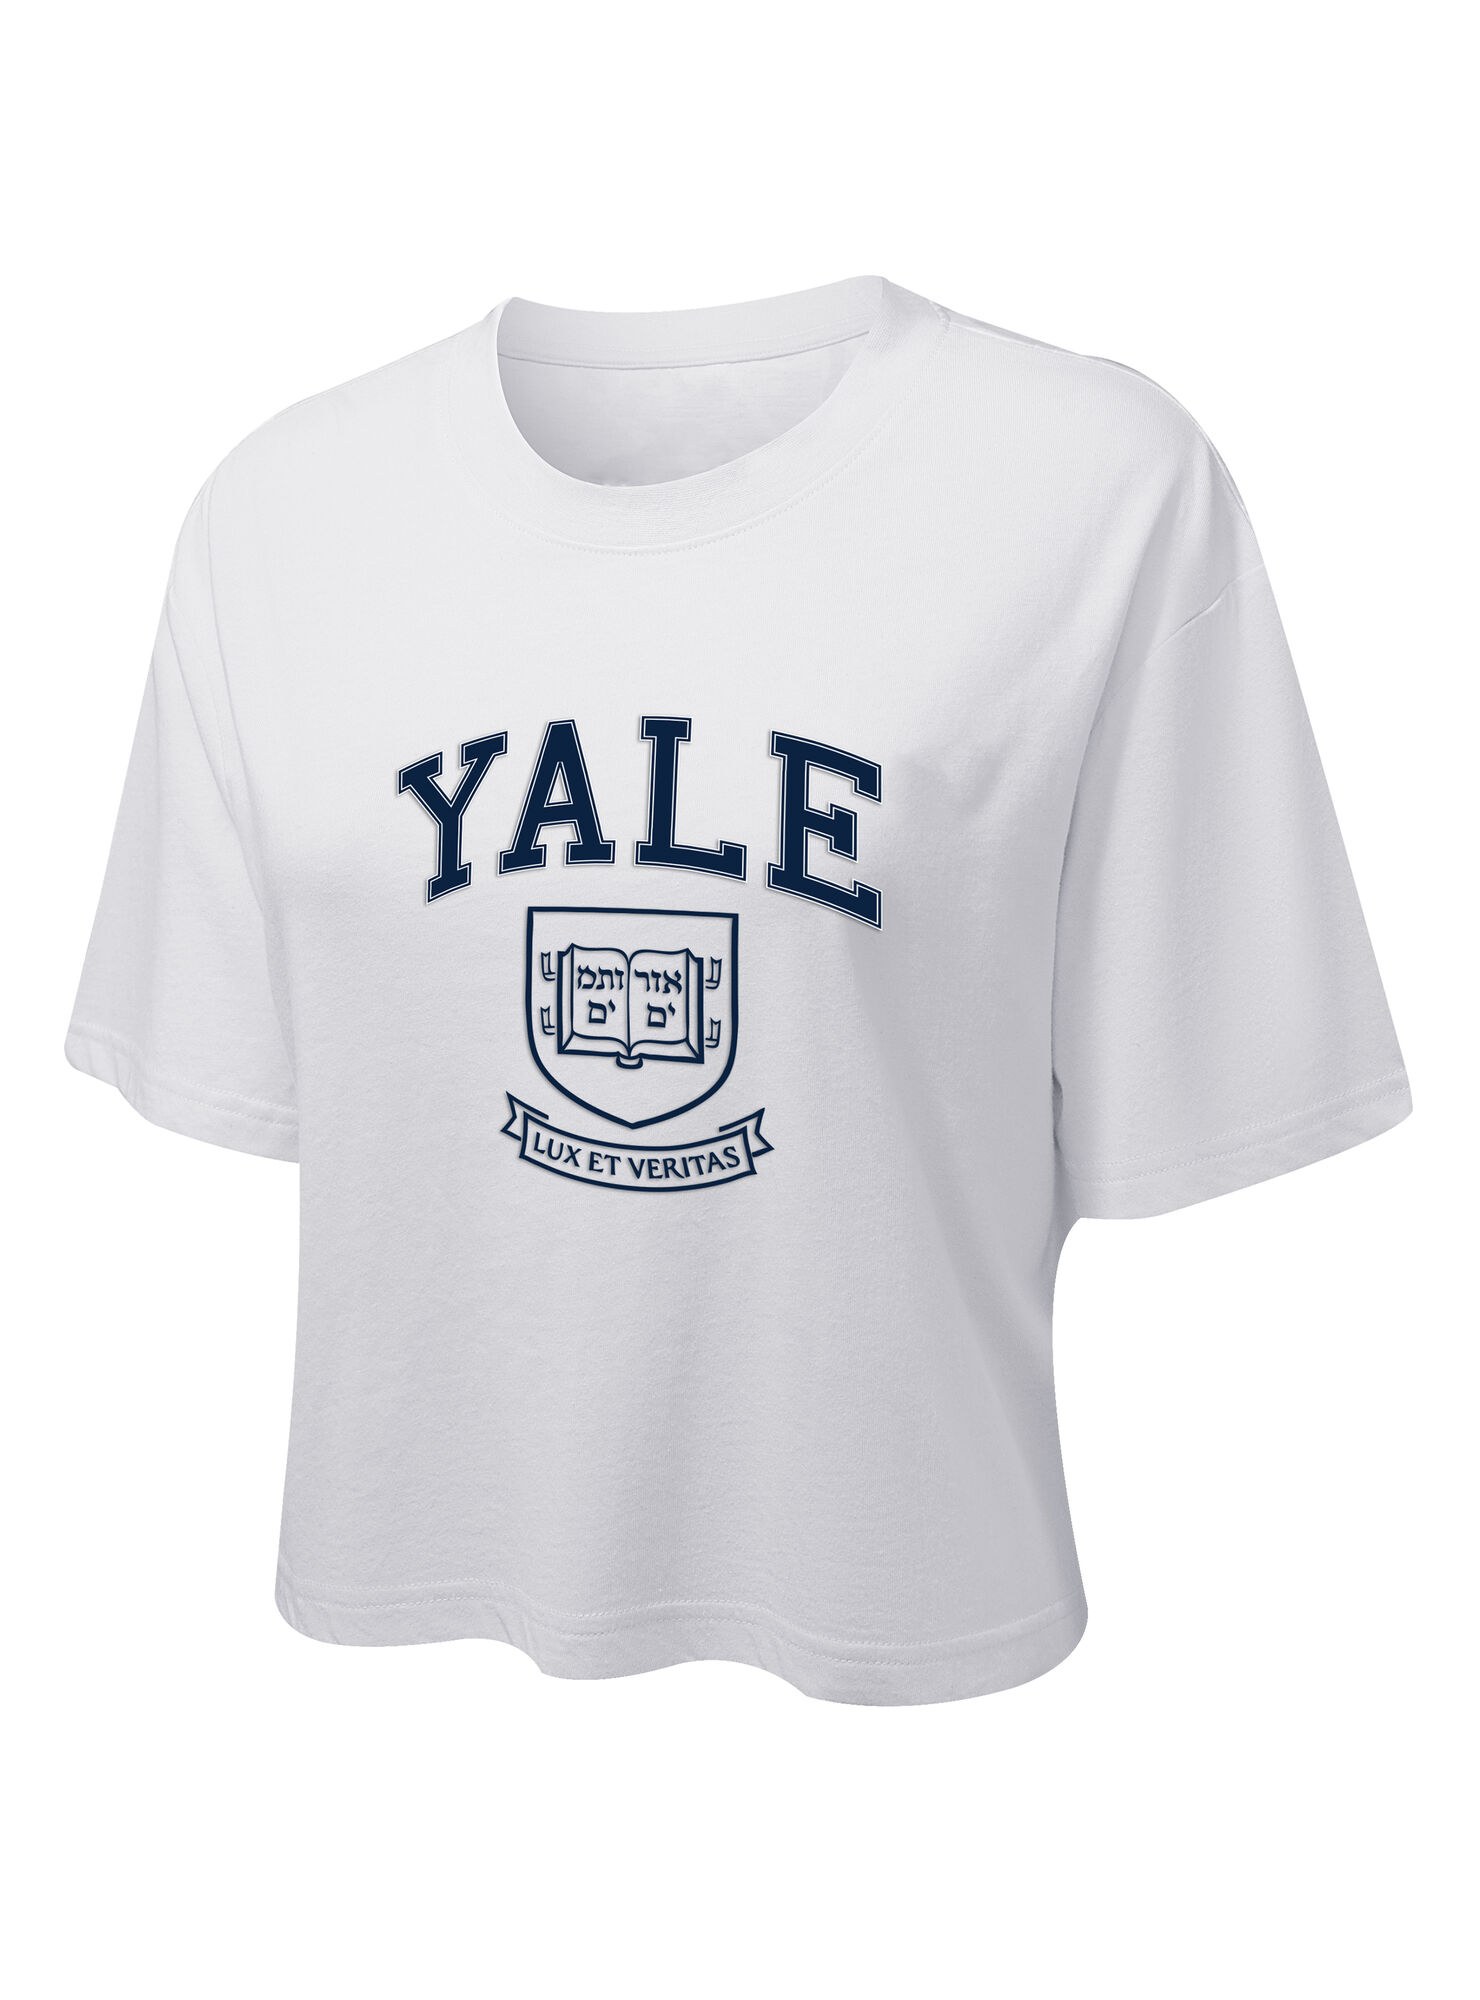 Crop Top Diseño Yale Preppy Style-Shield - Poleras y Blusas | Paris.cl